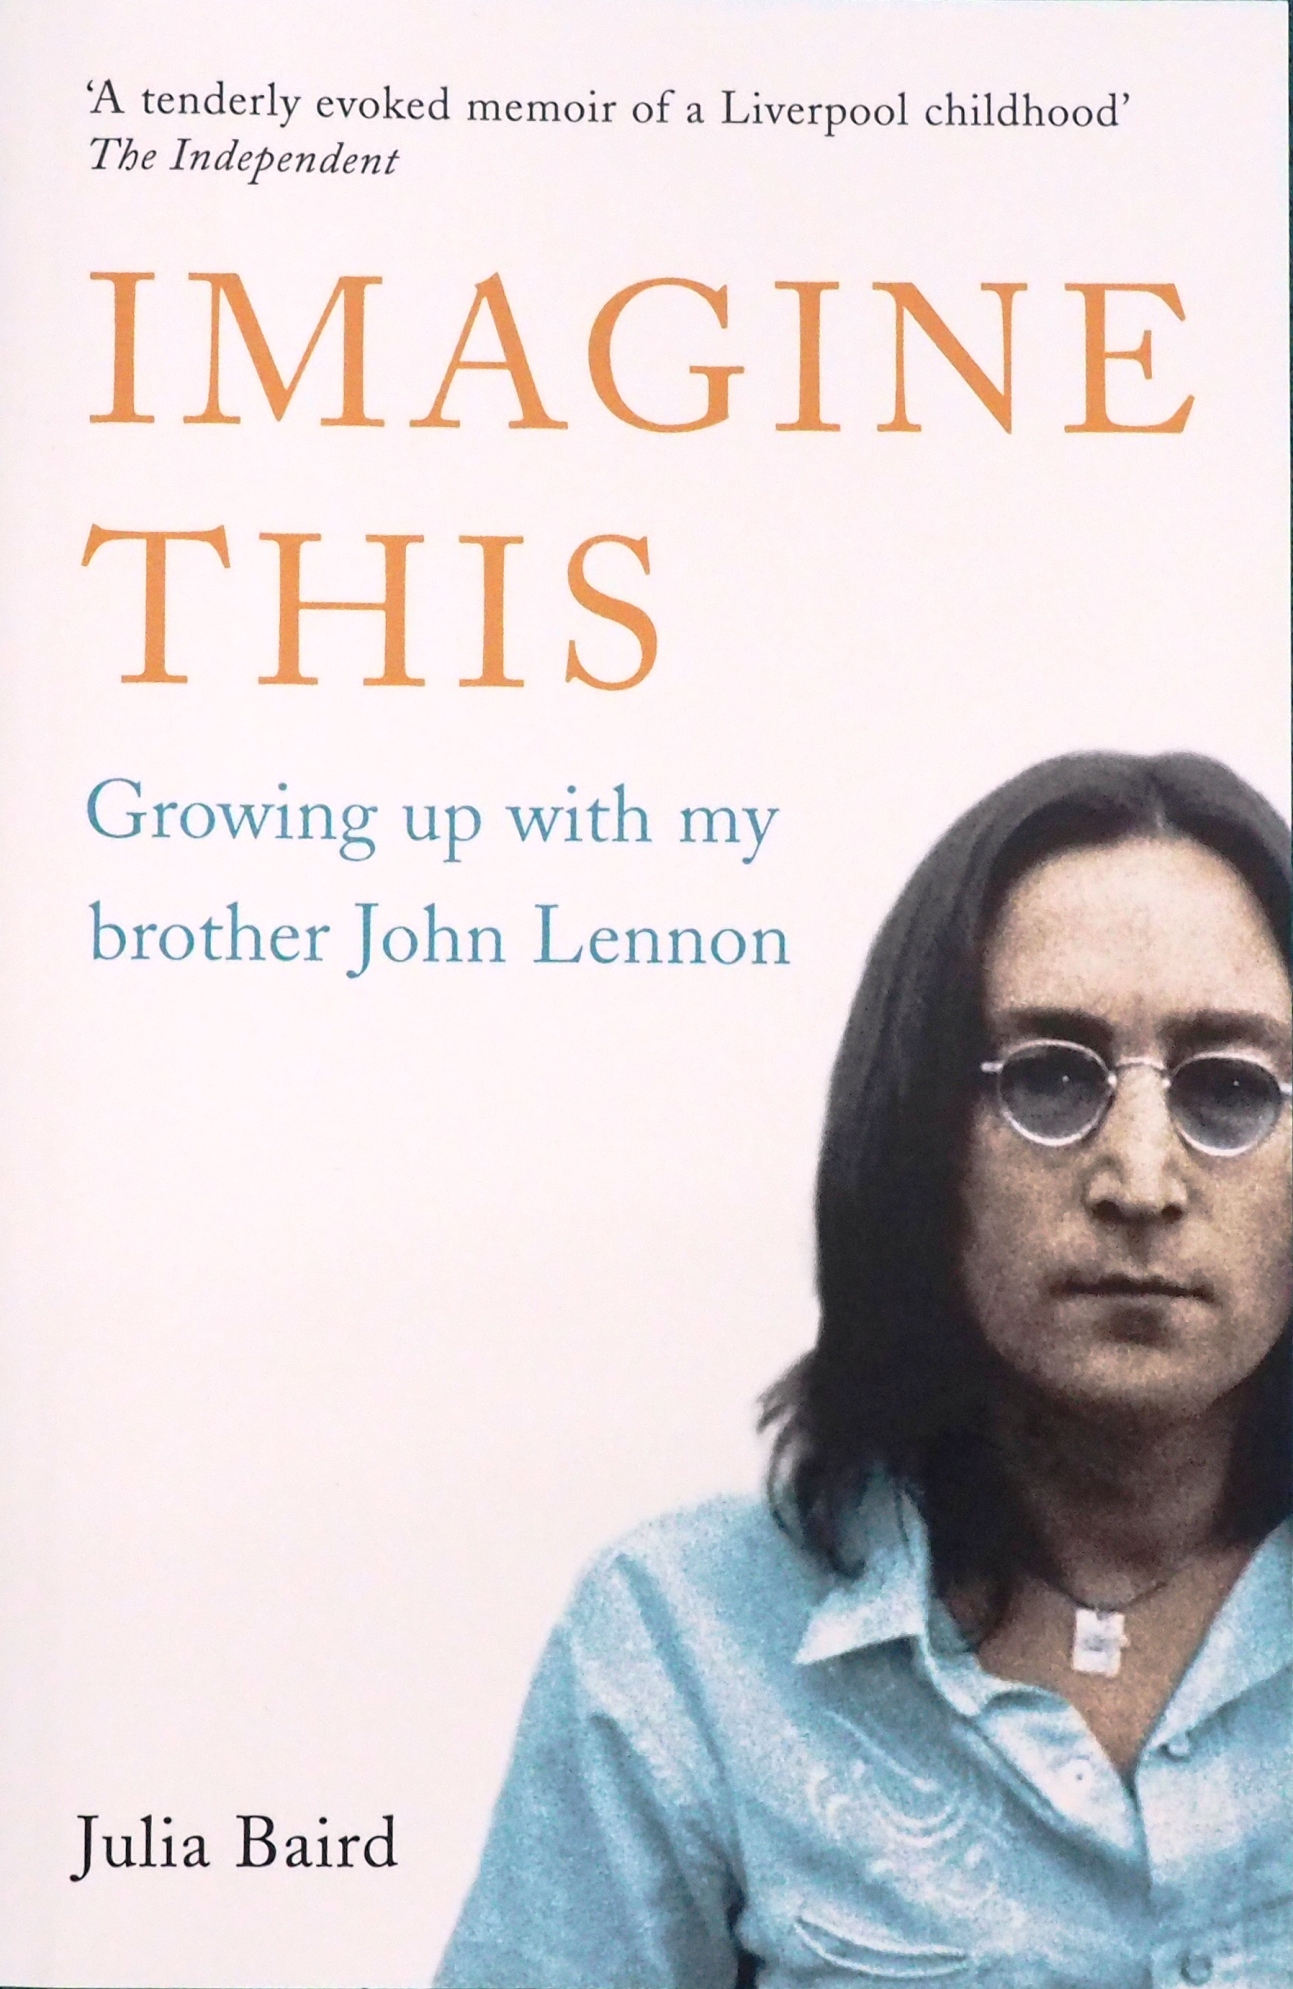 ジュリア・ベアードさんの著書「IMAGINE THIS」(イマジン・ジス〜兄のジョン・レノンと一緒に育って)